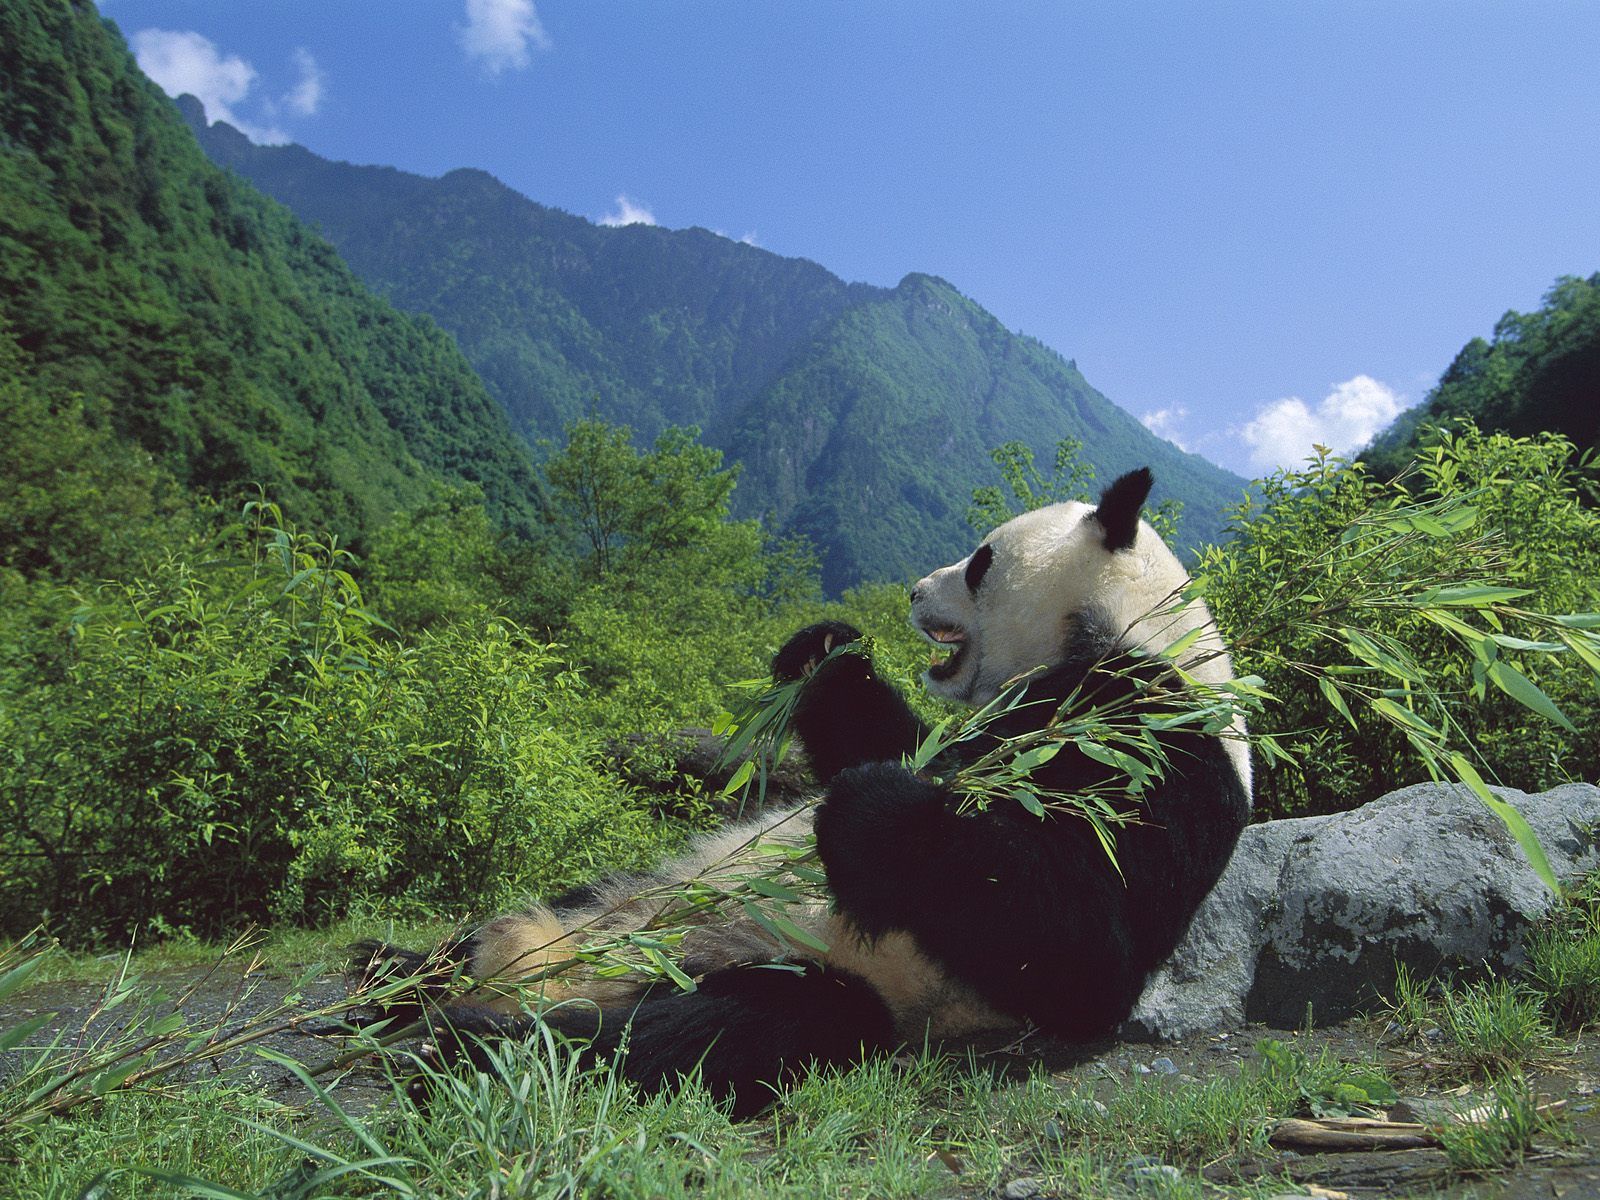 Eating panda